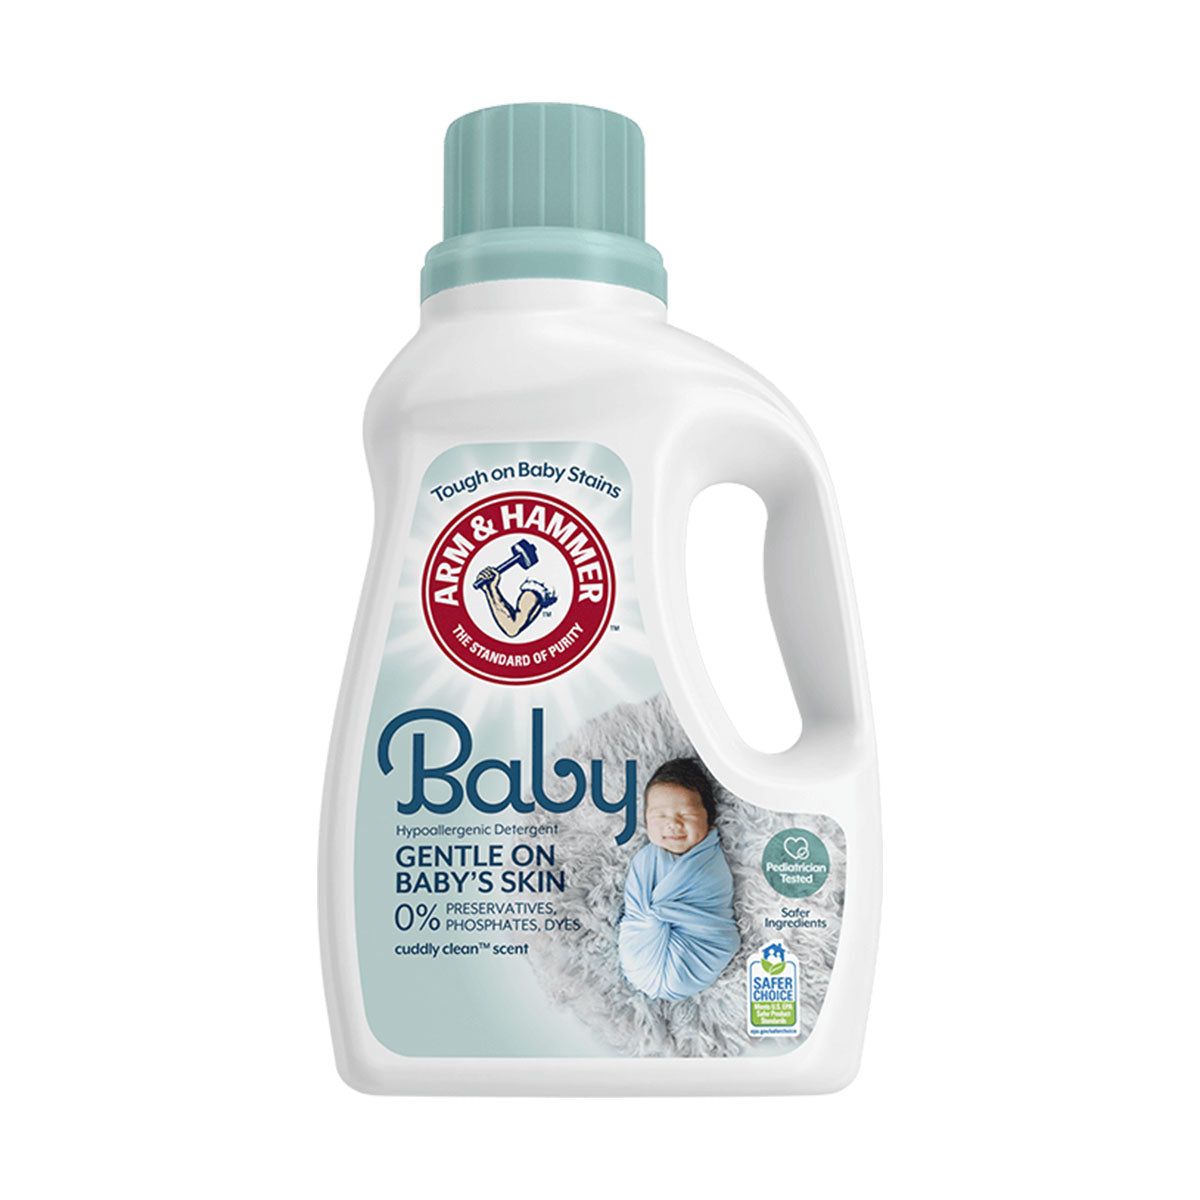 Detergente líquido hipoalergénico para ropa Arm & Hammer Baby, para recién nacidos y bebés, alta eficiencia 2,97 litros (77 cargas)